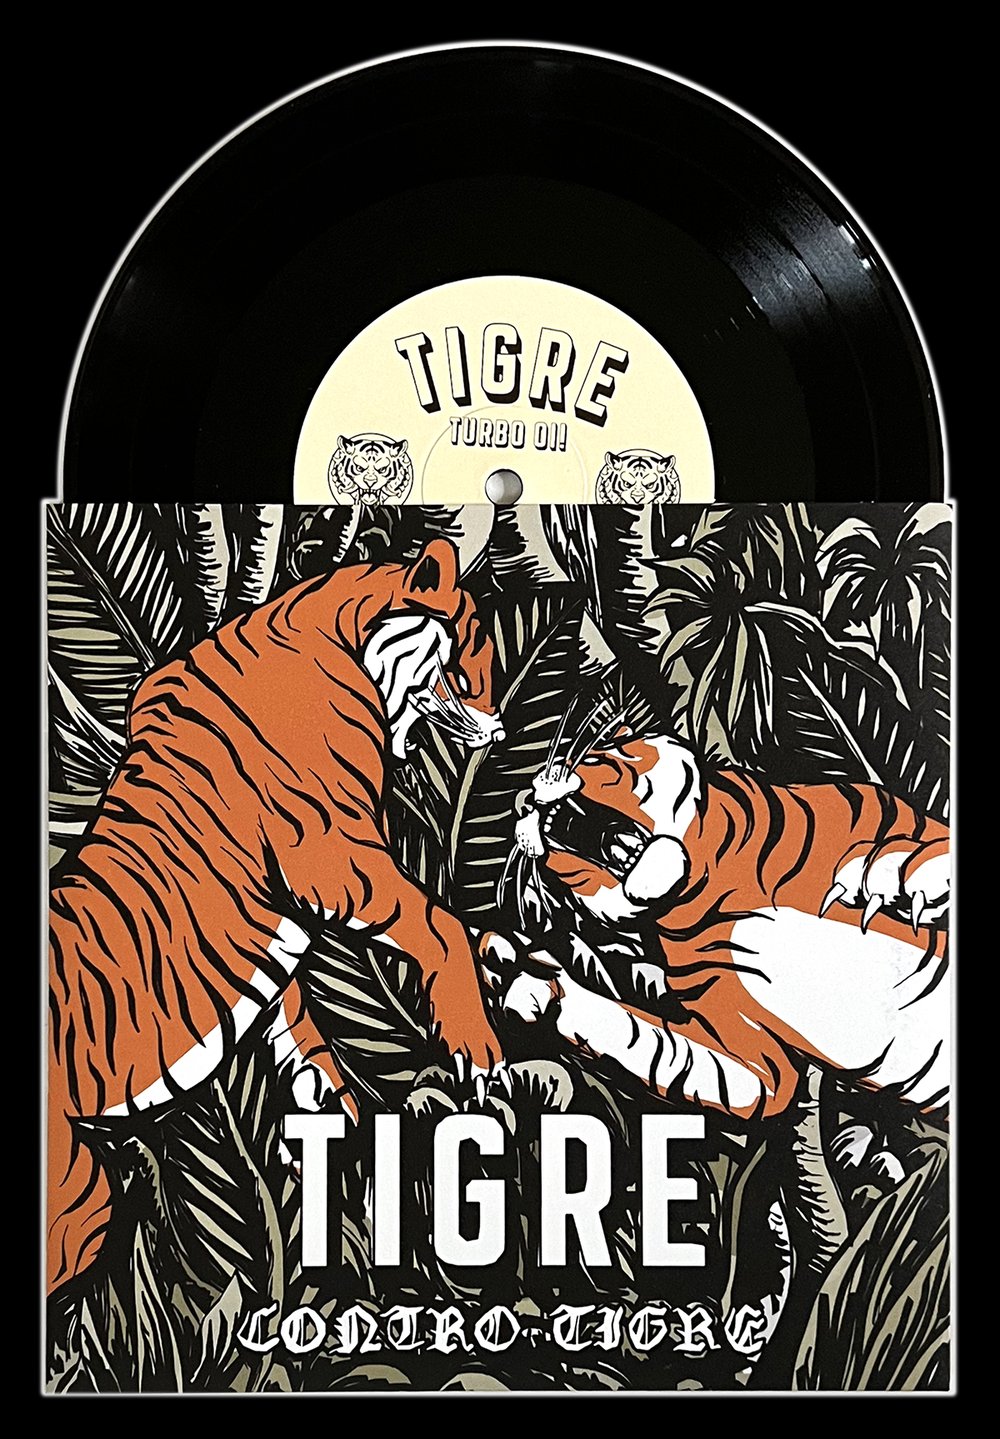 TIGRE 'Contro Tigre' 7" EP